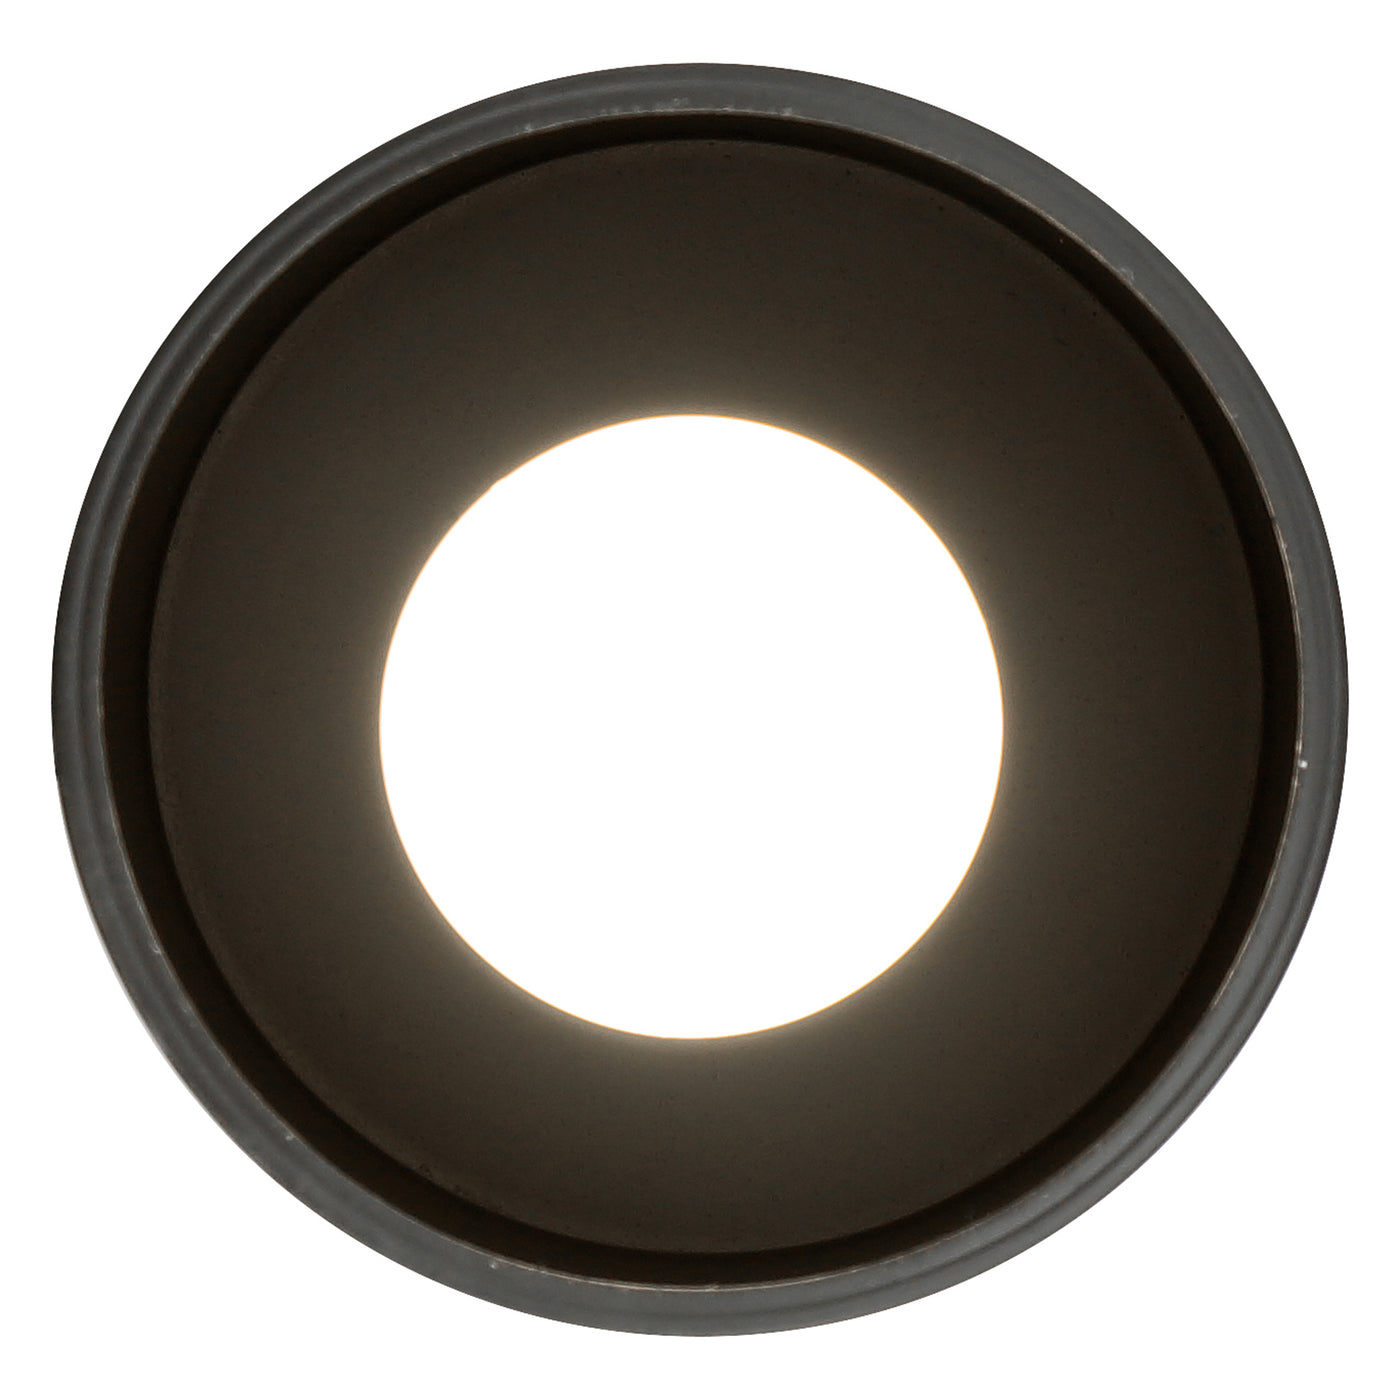 LED Pendant Cylinder Light, 60W, 120V, Matte Black, Pilson Collection